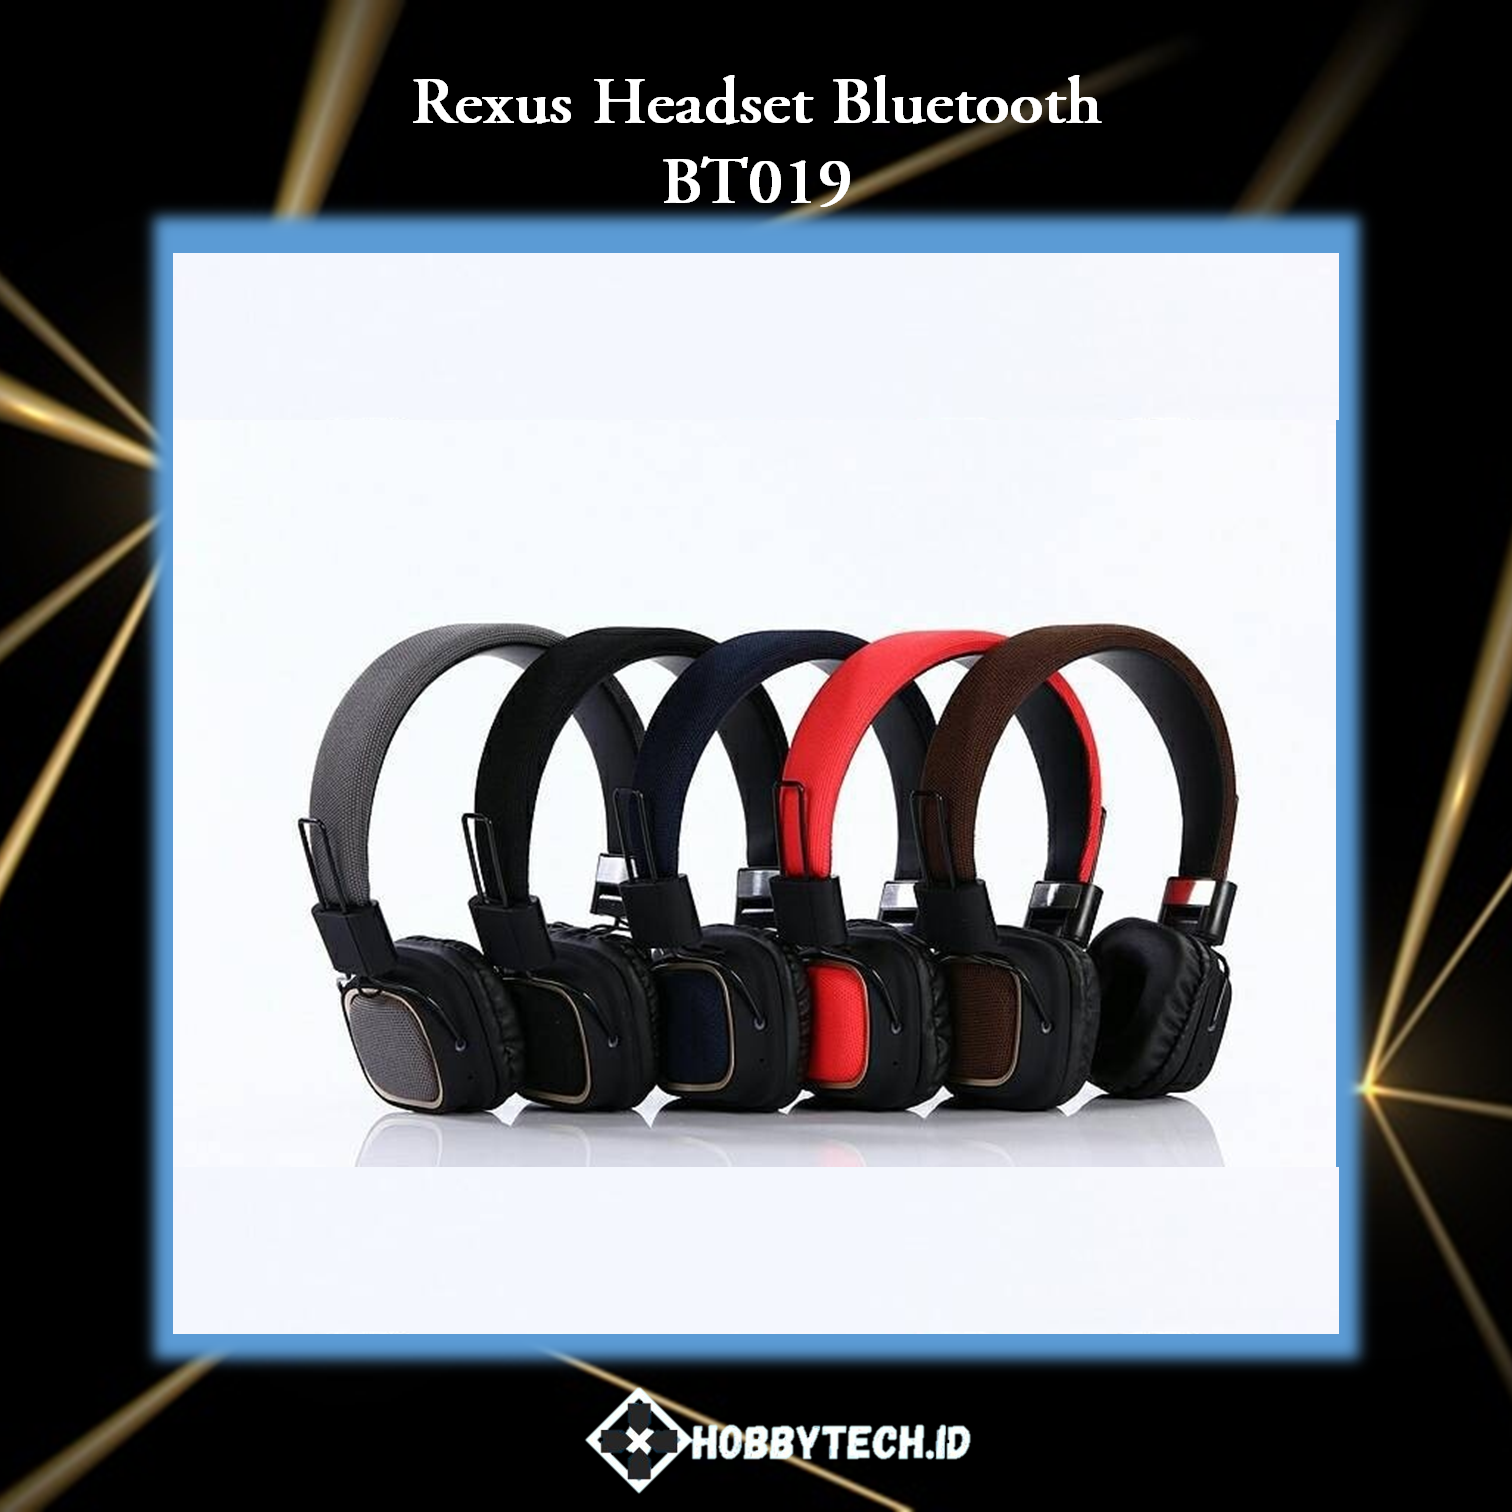 Rexus Headset Bluetooth BT019